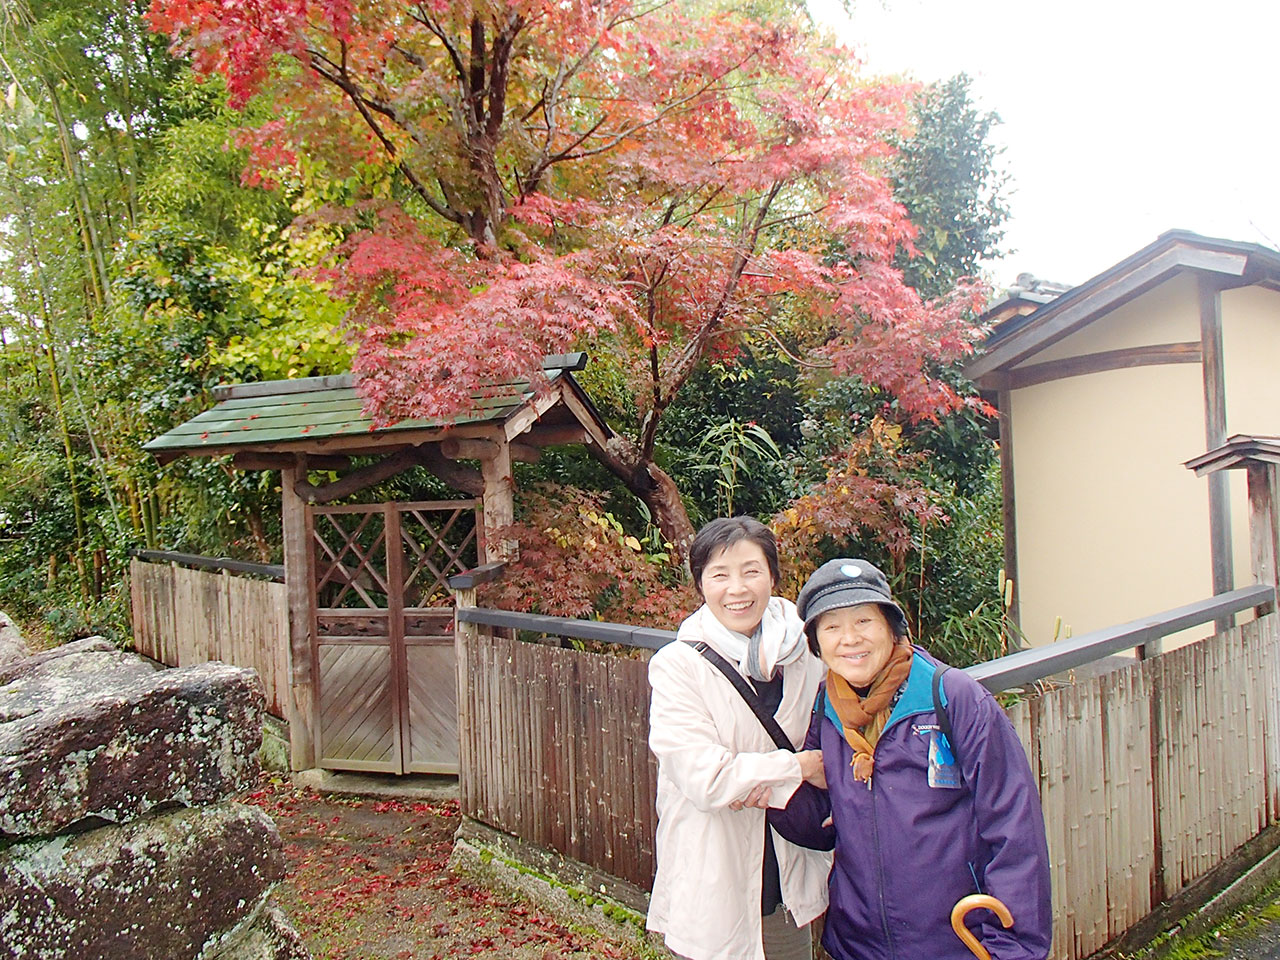 岩村城下町らしい町並みと綺麗な紅葉。